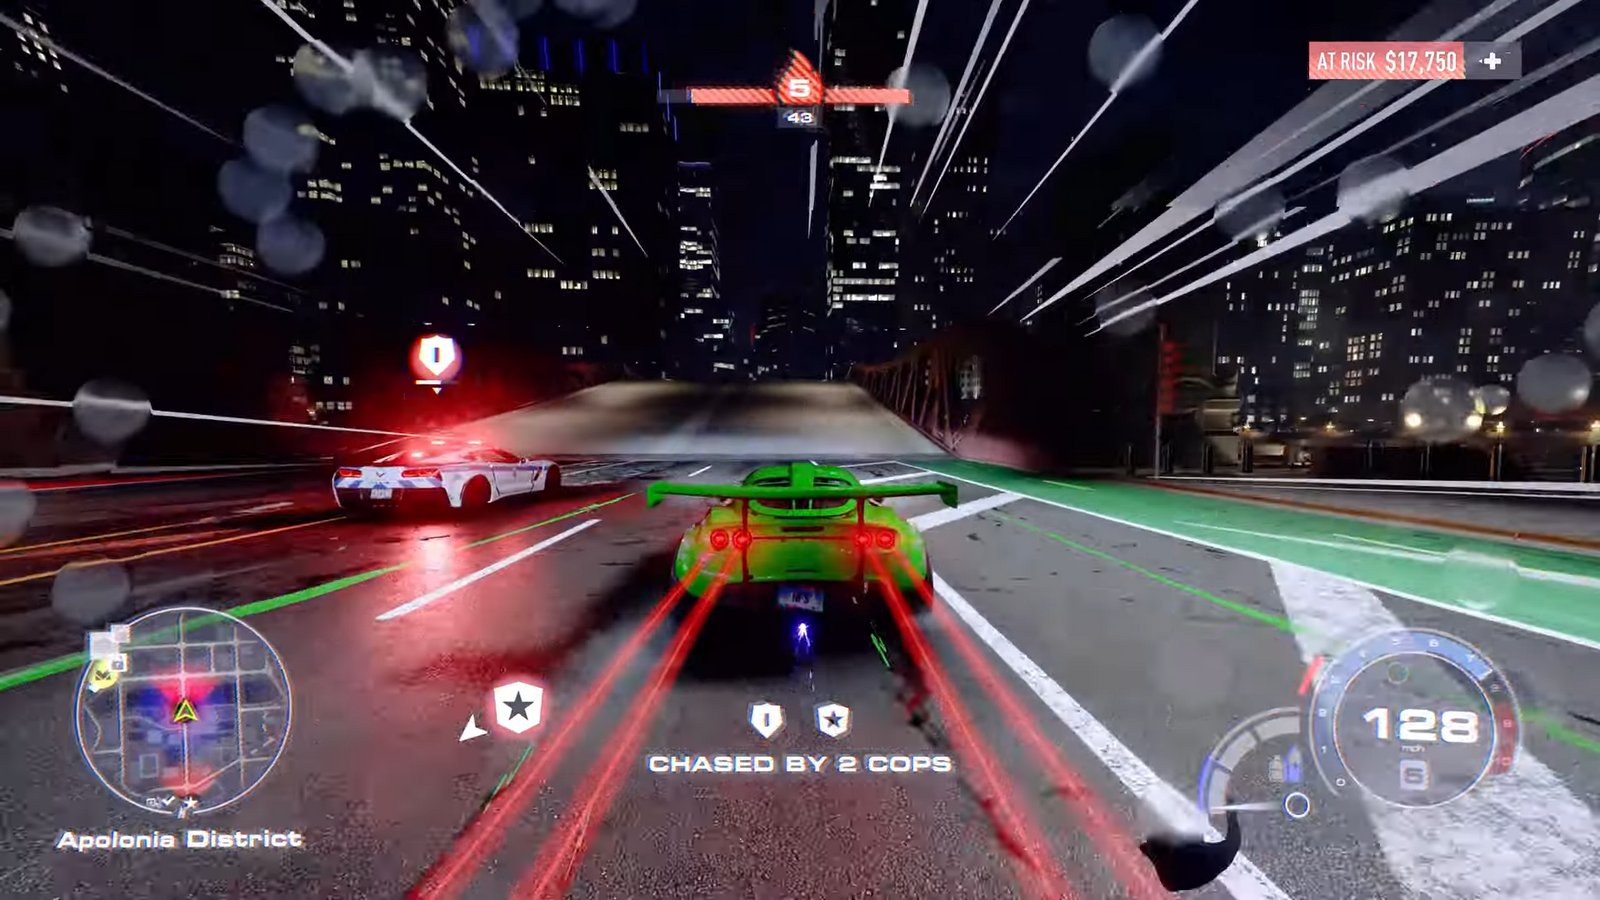 Need for Speed Unbound Risk & Reward gameplay trailer 